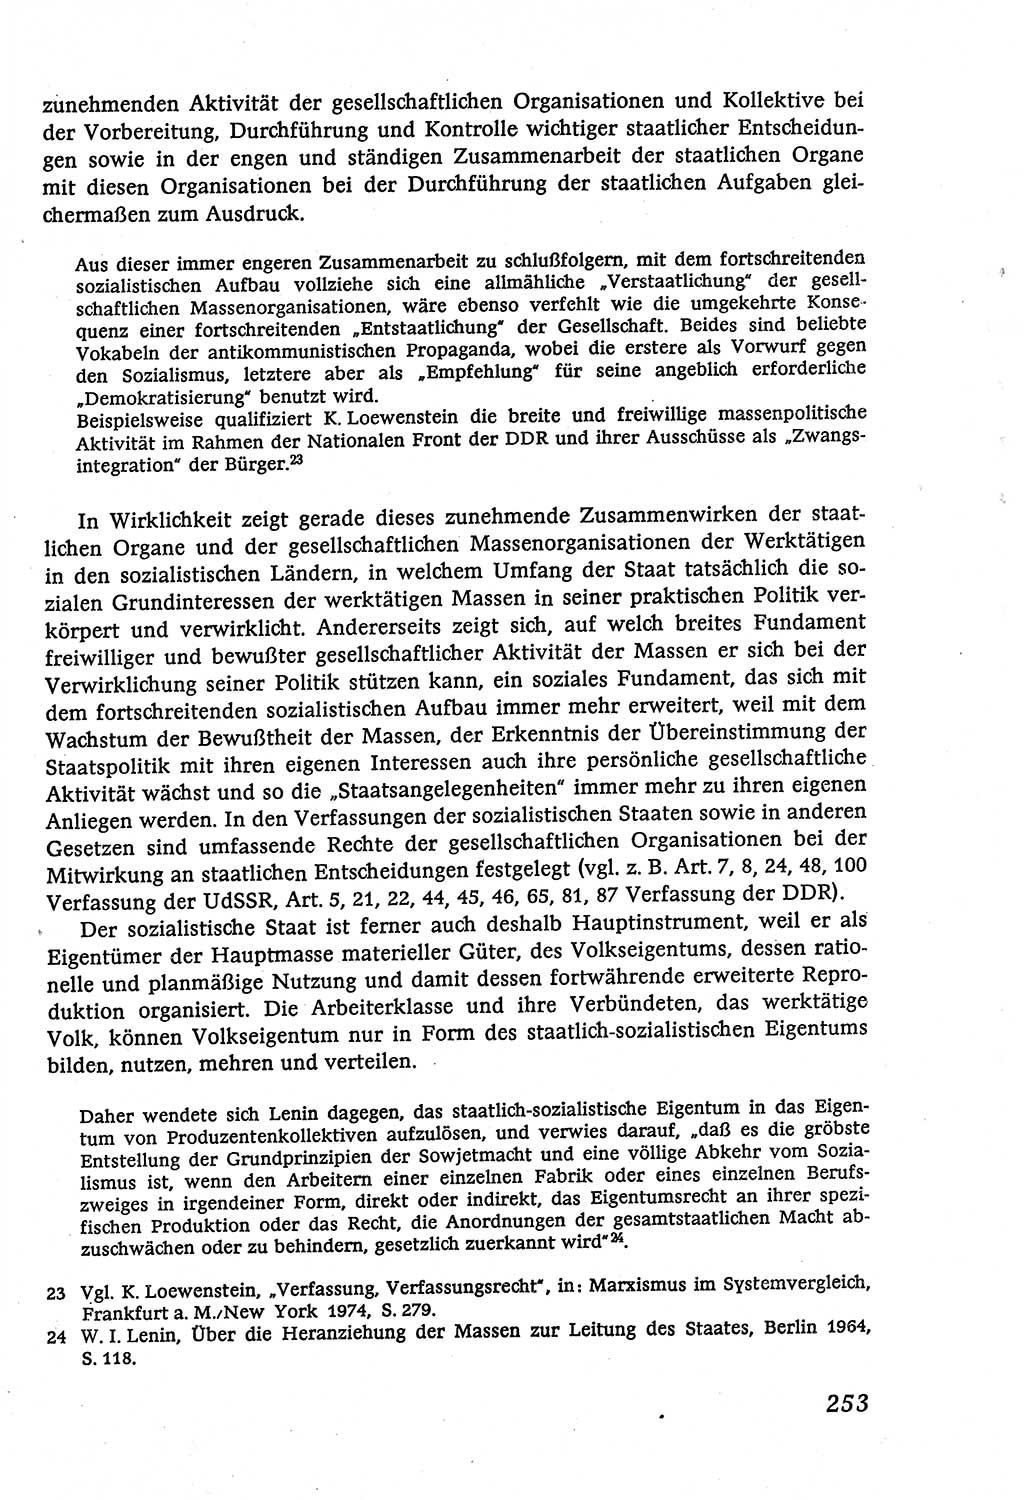 Marxistisch-leninistische (ML) Staats- und Rechtstheorie [Deutsche Demokratische Republik (DDR)], Lehrbuch 1980, Seite 253 (ML St.-R.-Th. DDR Lb. 1980, S. 253)